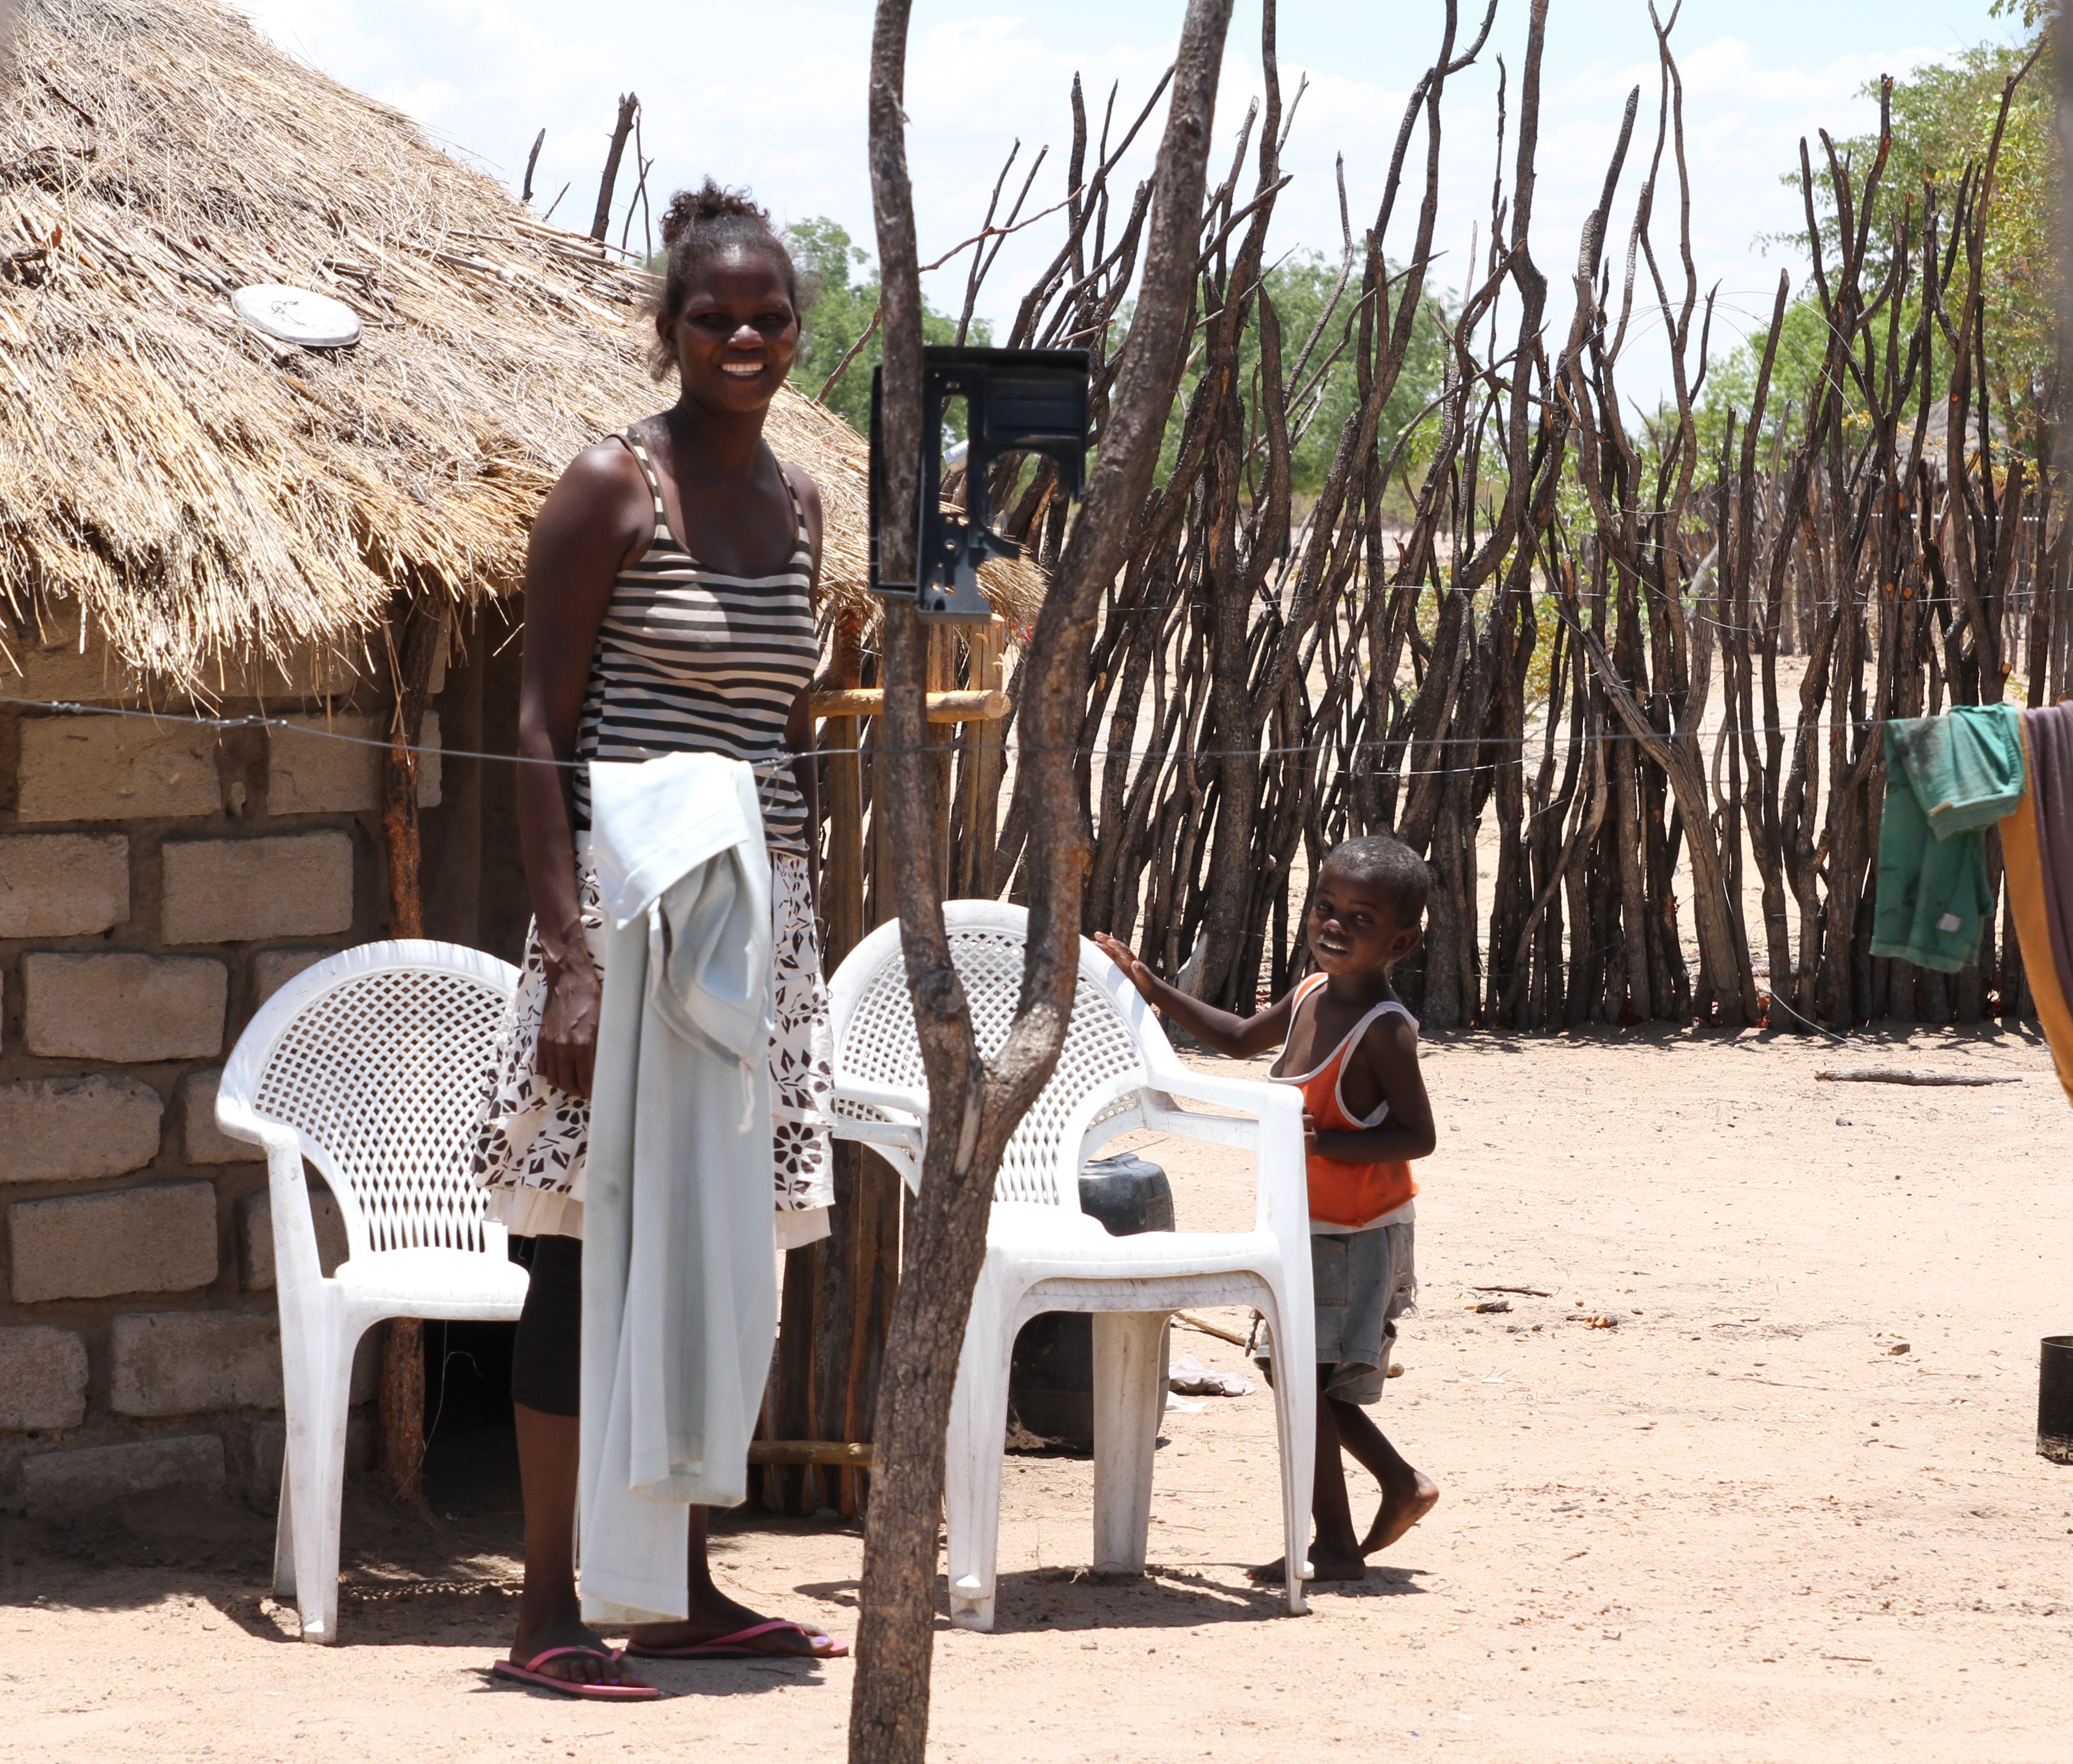  Luterilainen maailmanliitto käyttää Namibiassa käteisen rahan jakoon pohjautuvaa katastrofiavun mallia. Namibialainen Albertina Samuel perheineen kuuluu tuensaajien piiriin. Kuva Laura Meriläinen-Amaumo